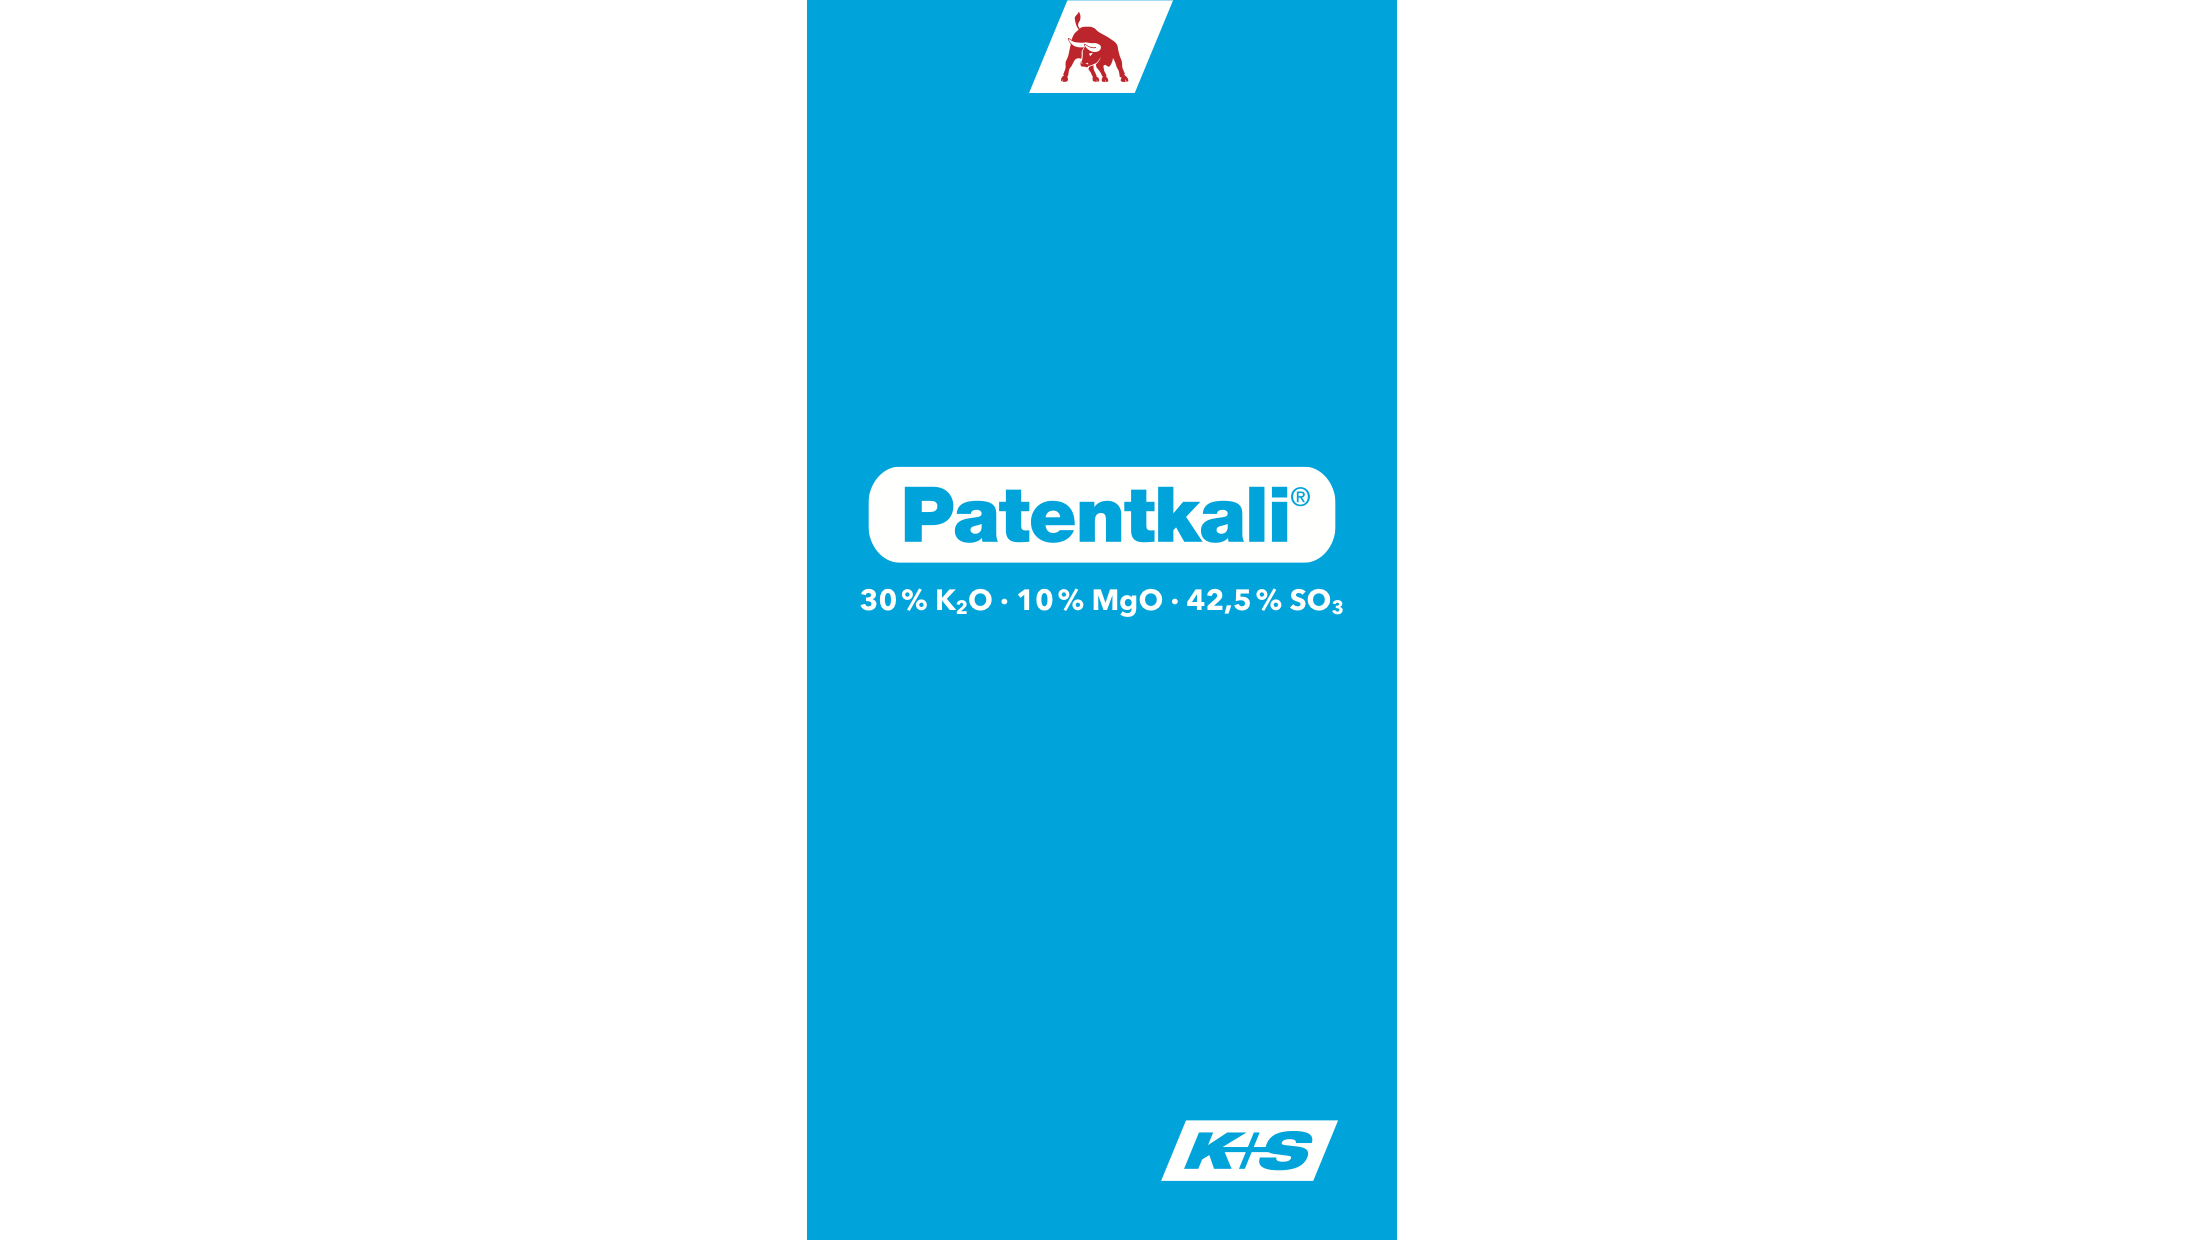 es-patentkali-leaflet-16-9